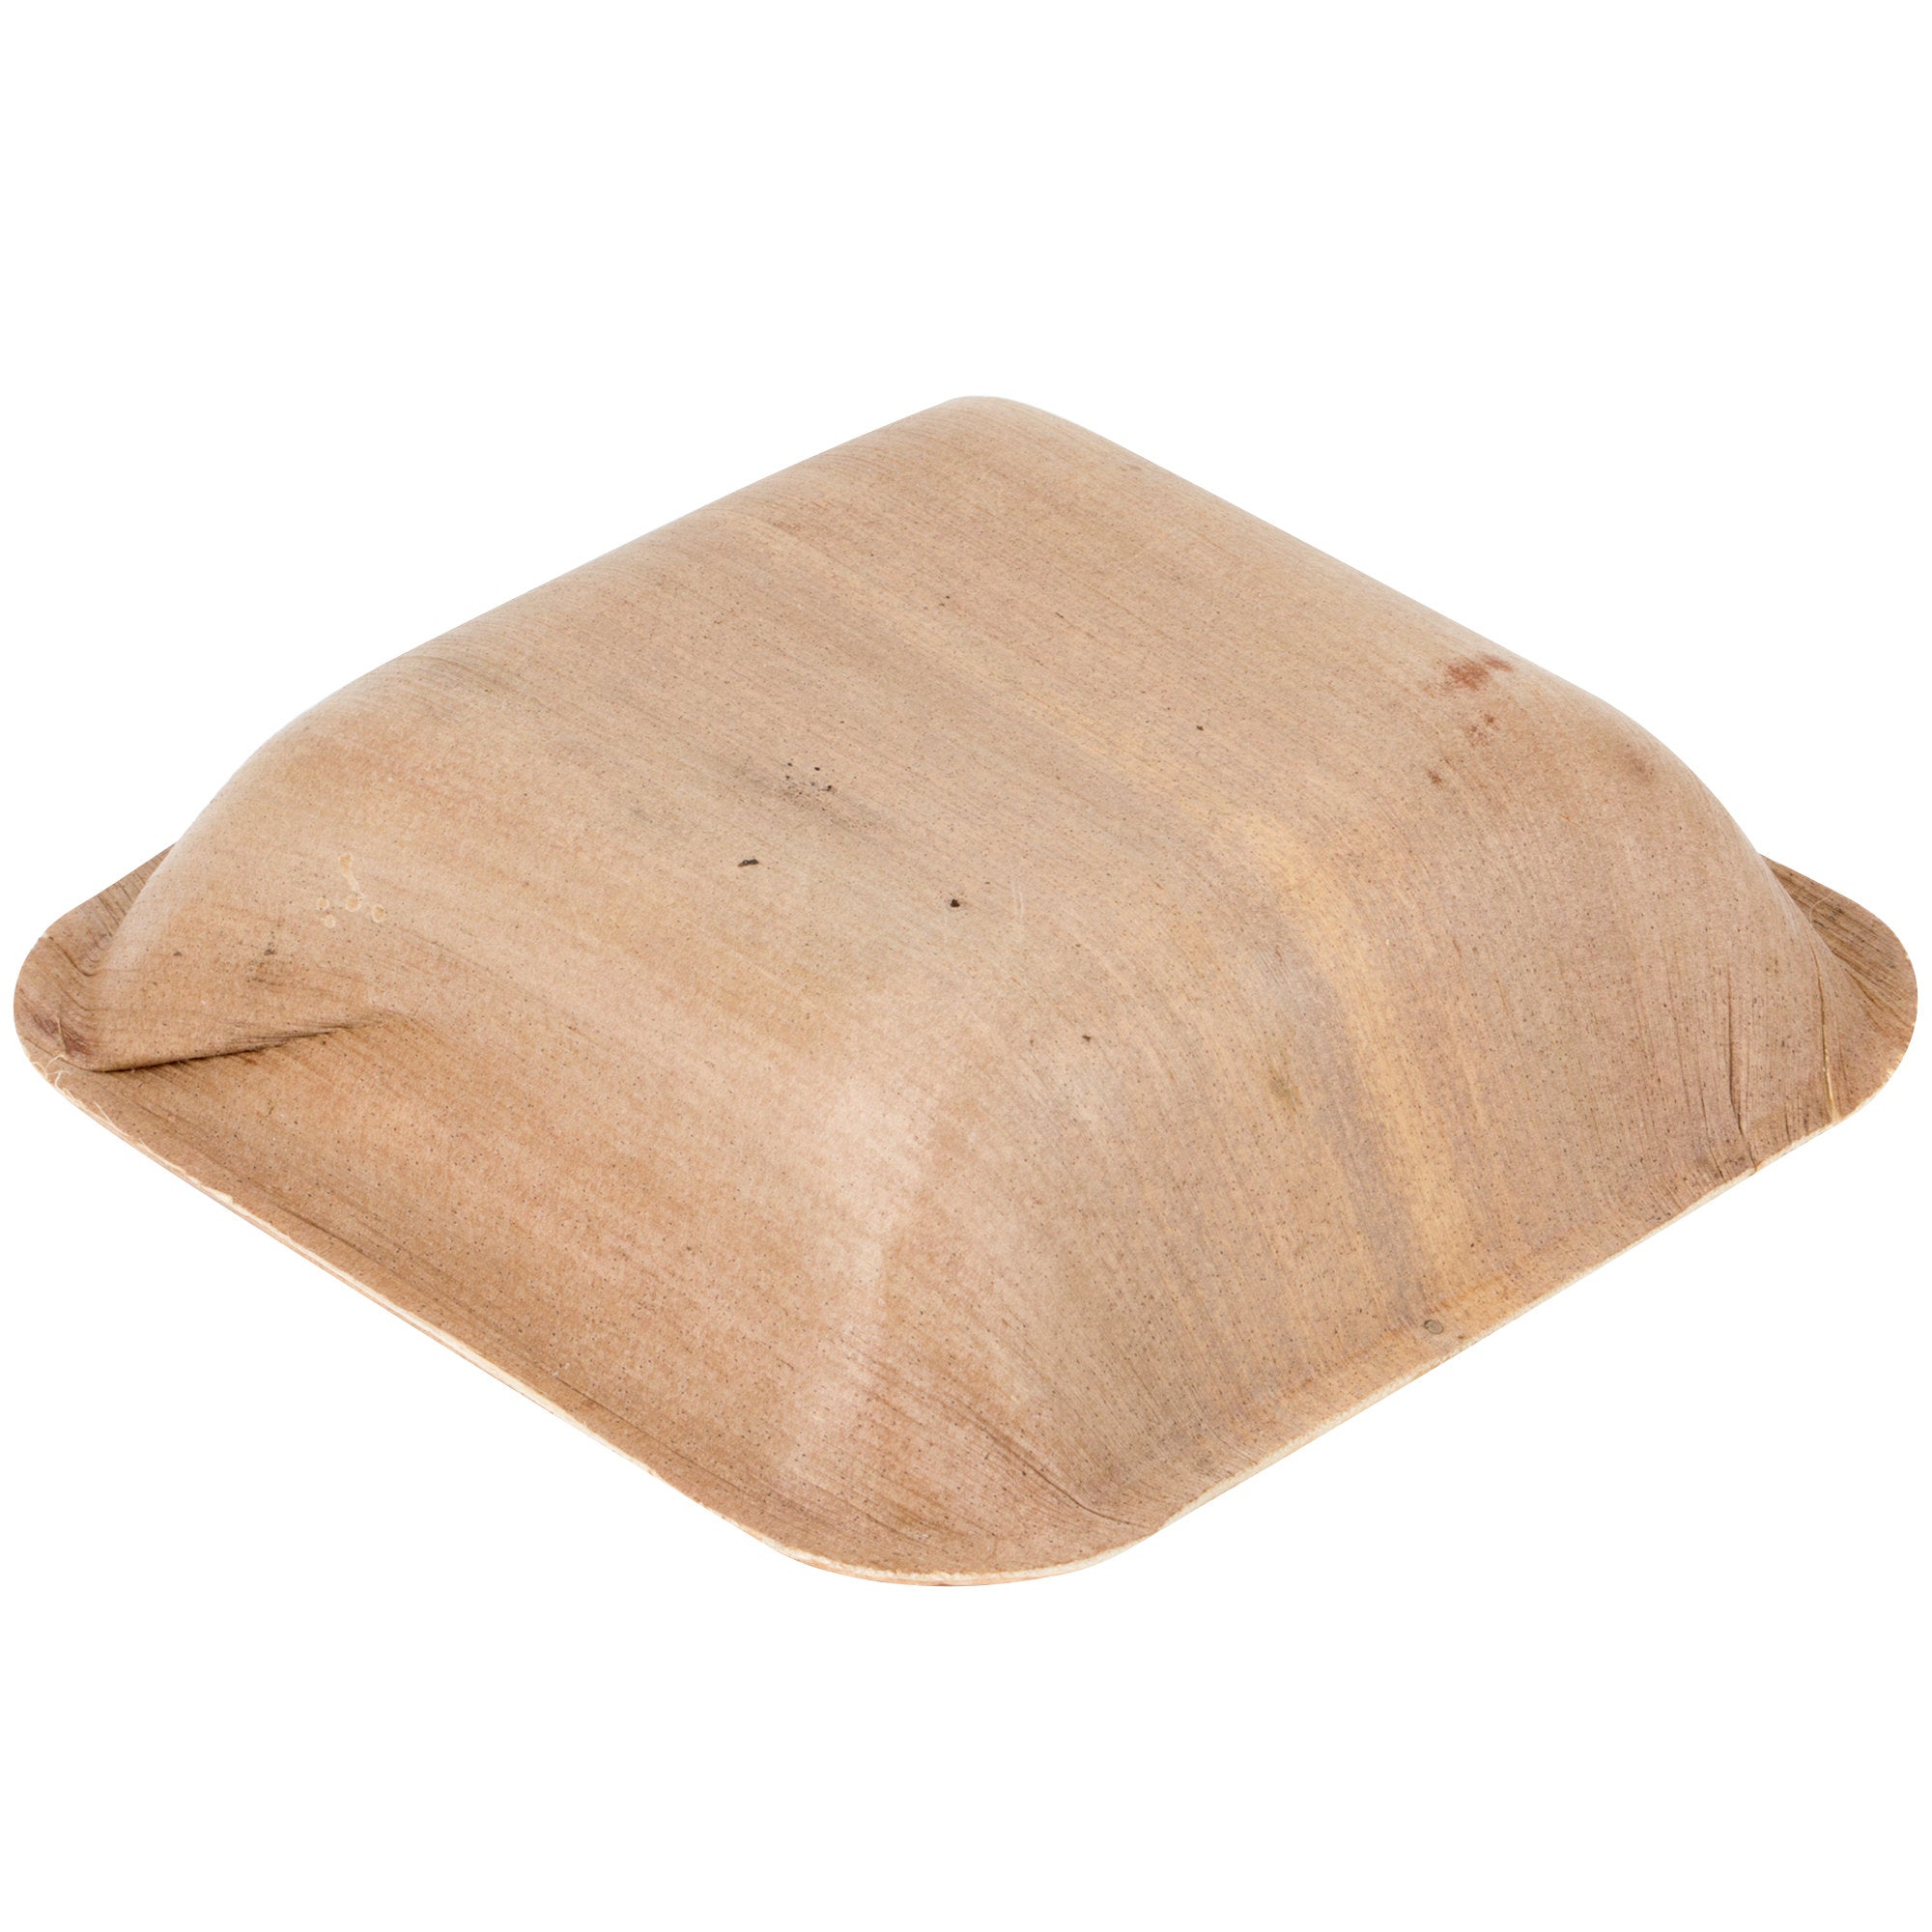 3 oz. Square Palm Leaf Eco-Friendly Disposable Mini Bowls (100 Bowls P